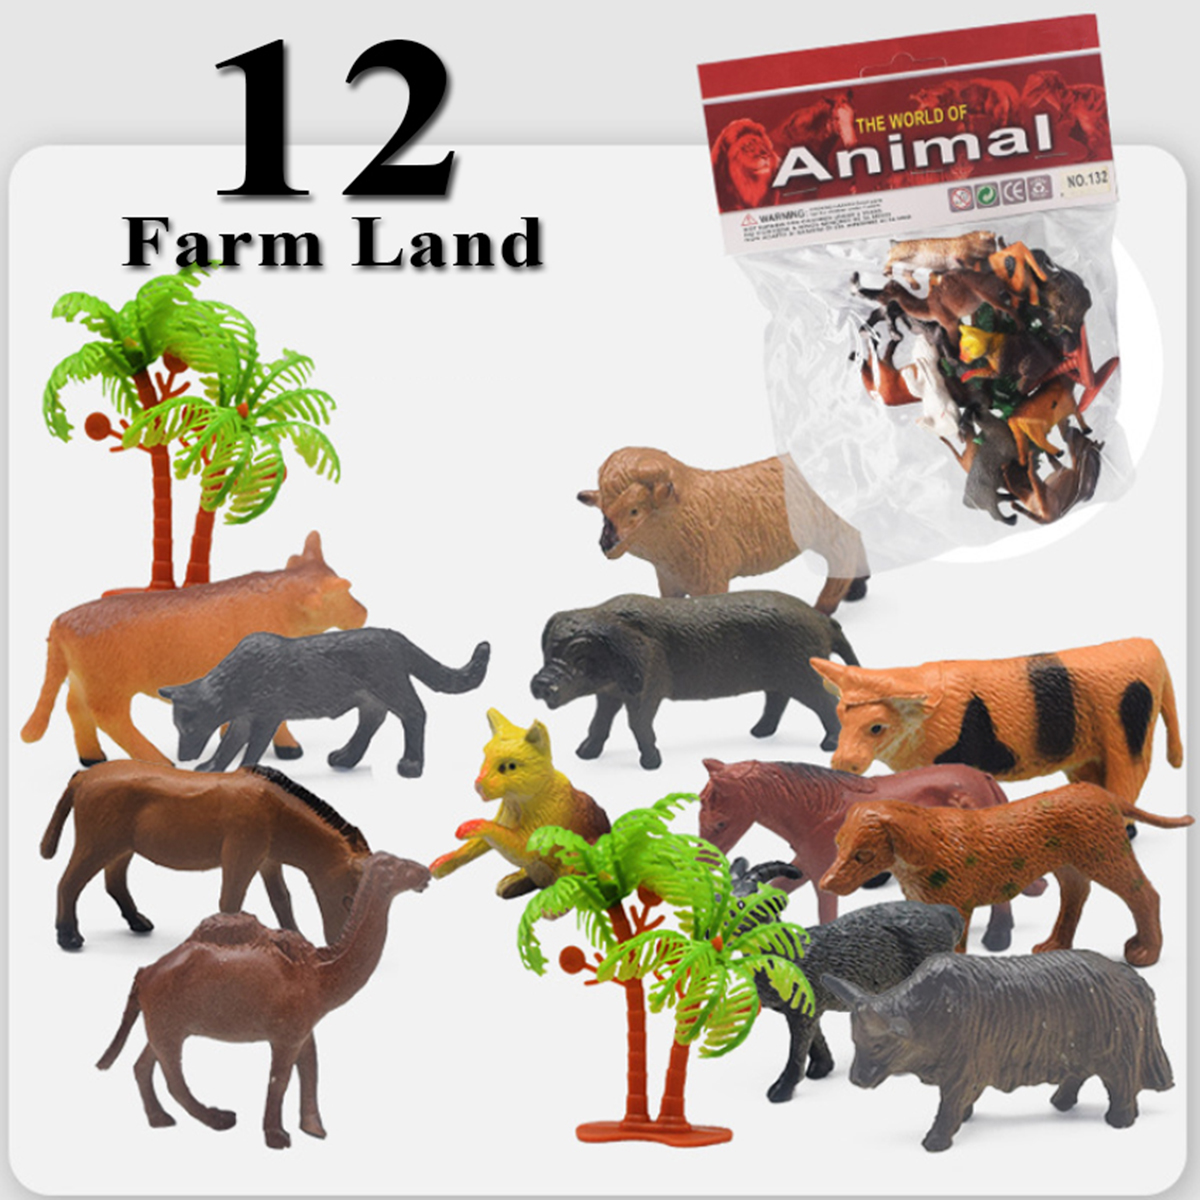 Bộ 12 đồ chơi động vật nuôi trong trang trại A132 New4all Farm Land Animal nhựa dẻo